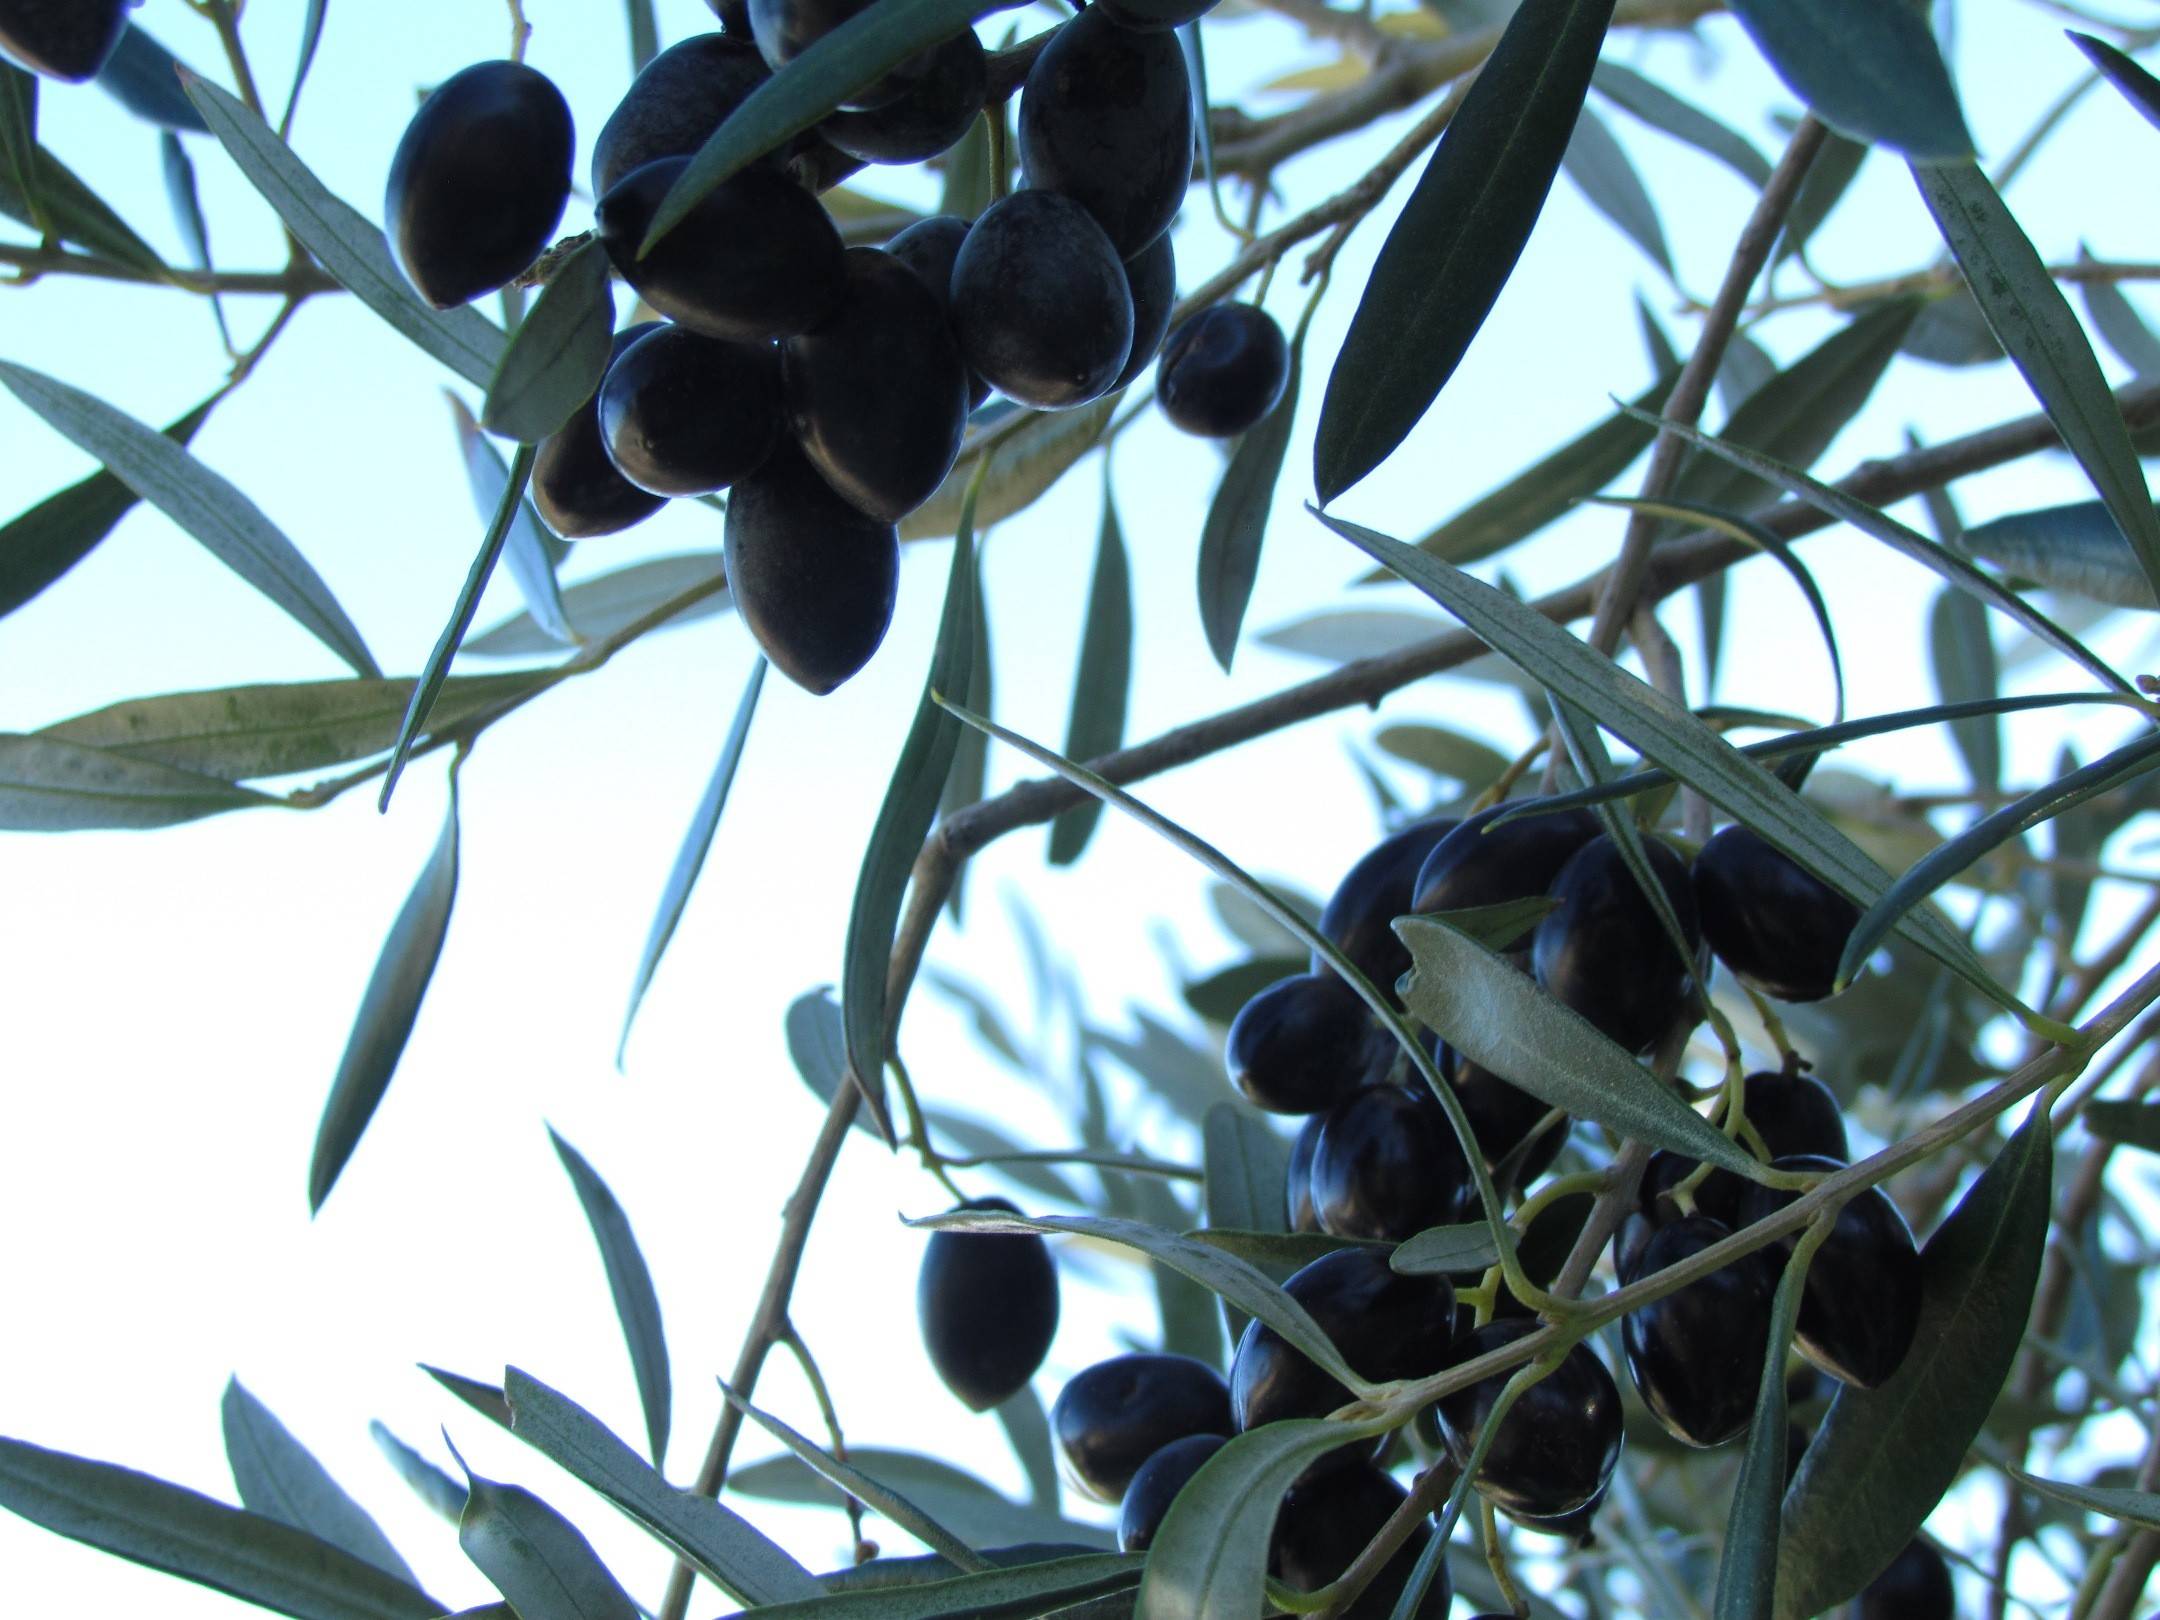 Die Gaben der "Elaió", der sagenumwobenen Oliven-Halbgöttin